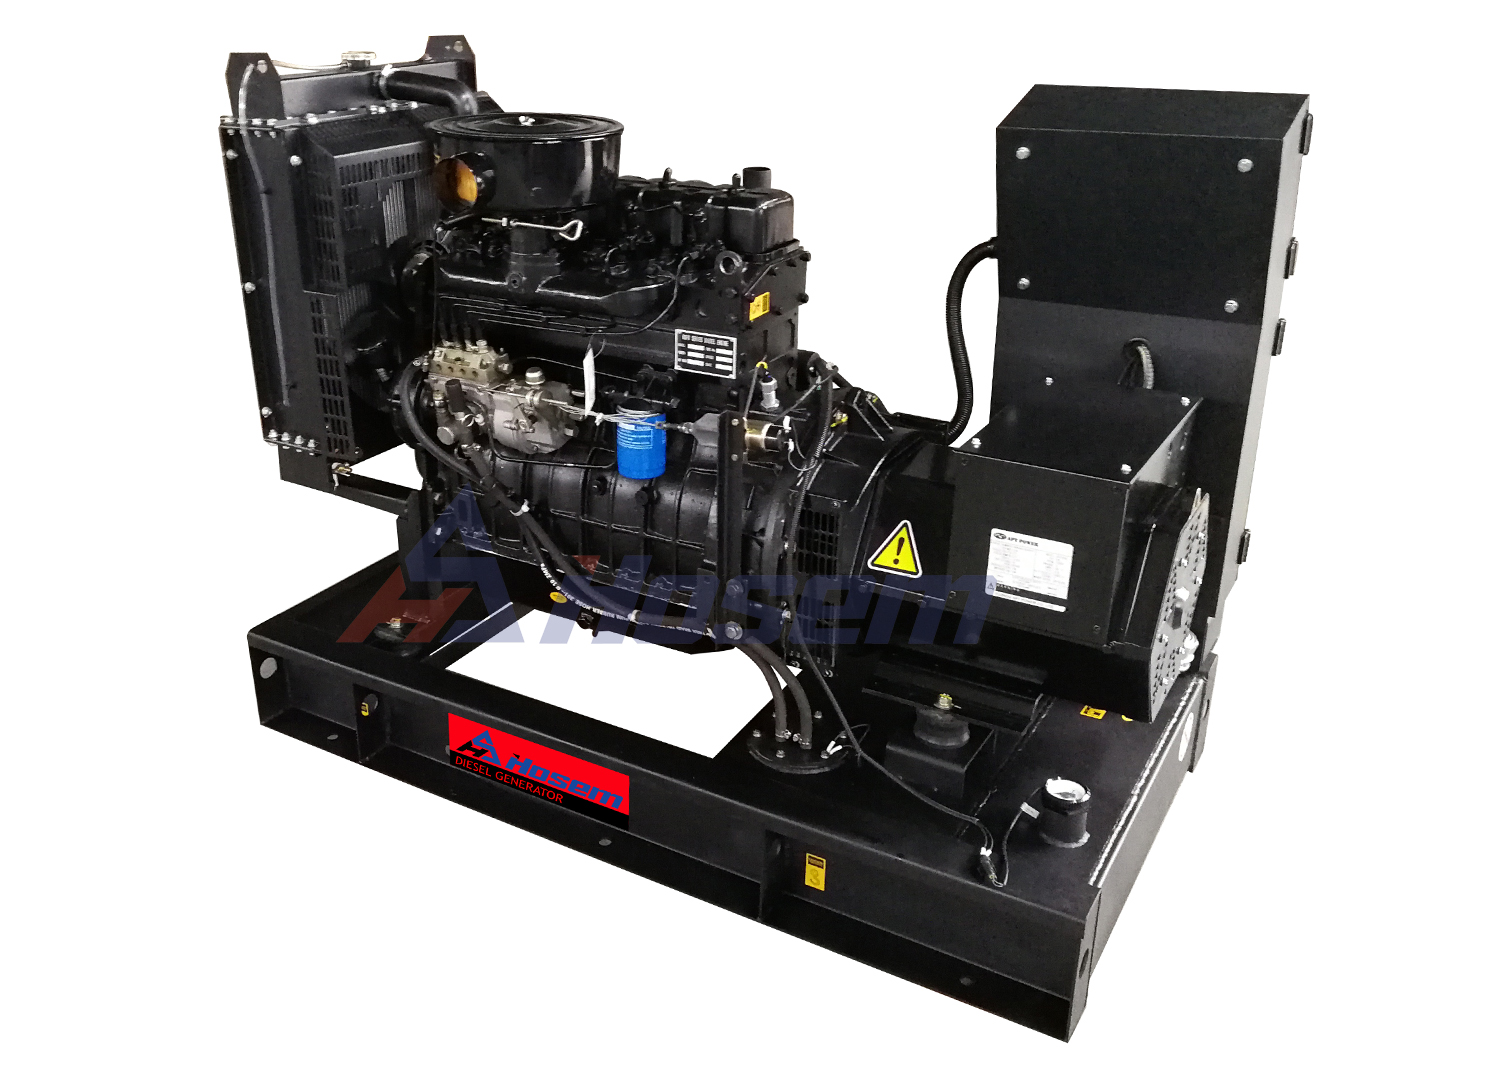 Single Phase China Generator Set with Ricardo Diesel Engine And Brushless Alternator Rate Output 20kVA 